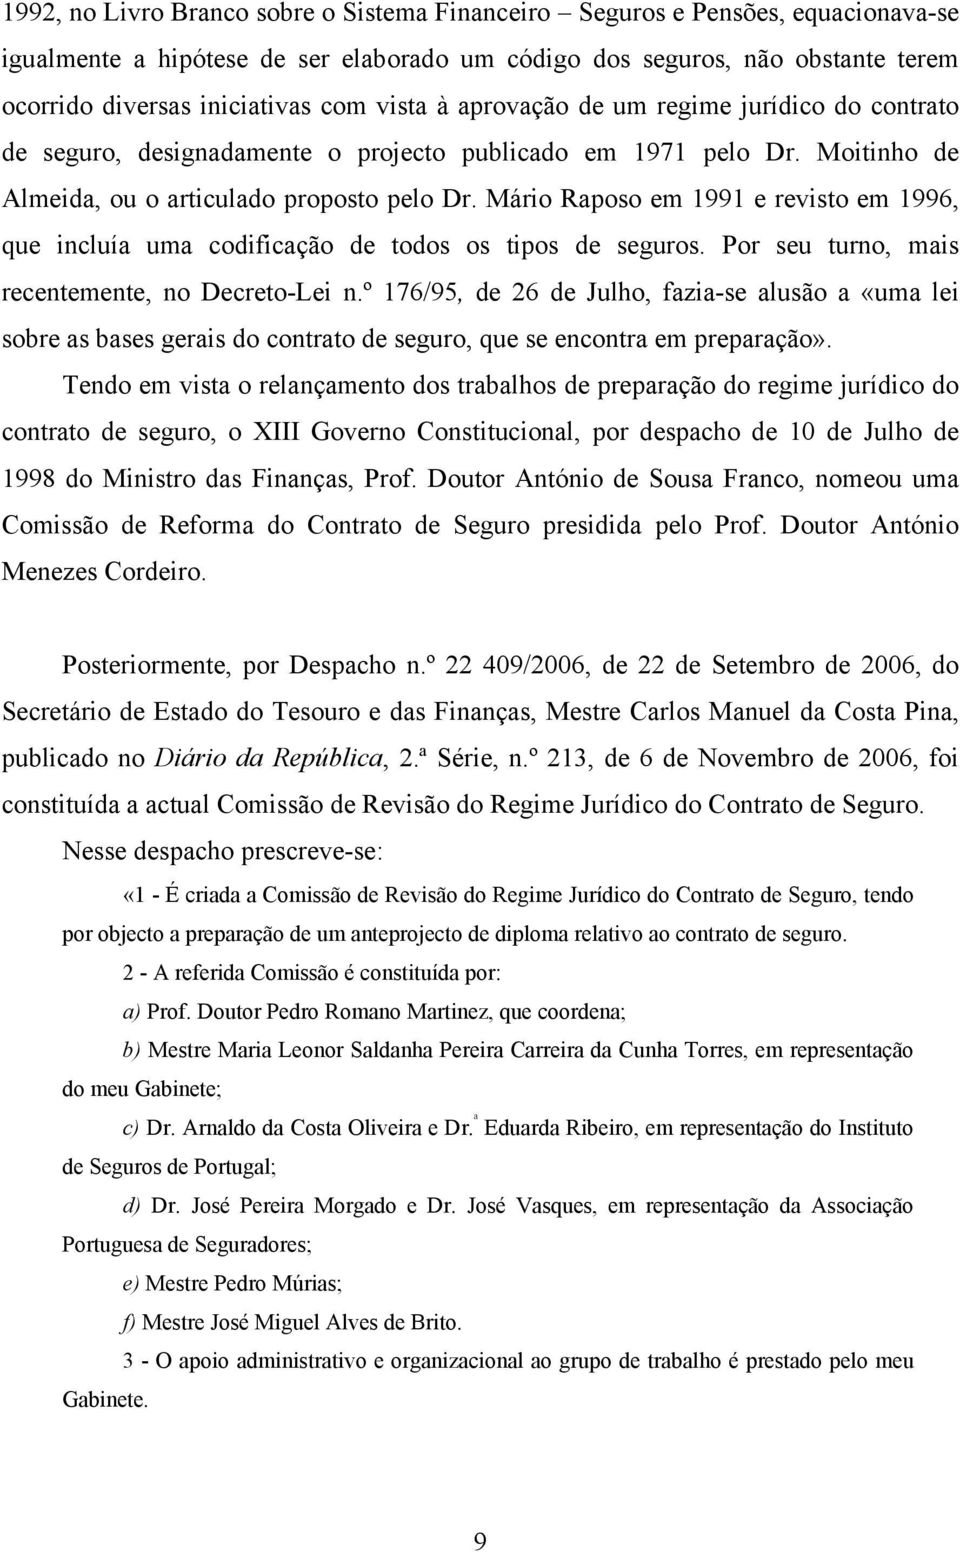 Mário Raposo em 1991 e revisto em 1996, que incluía uma codificação de todos os tipos de seguros. Por seu turno, mais recentemente, no Decreto-Lei n.